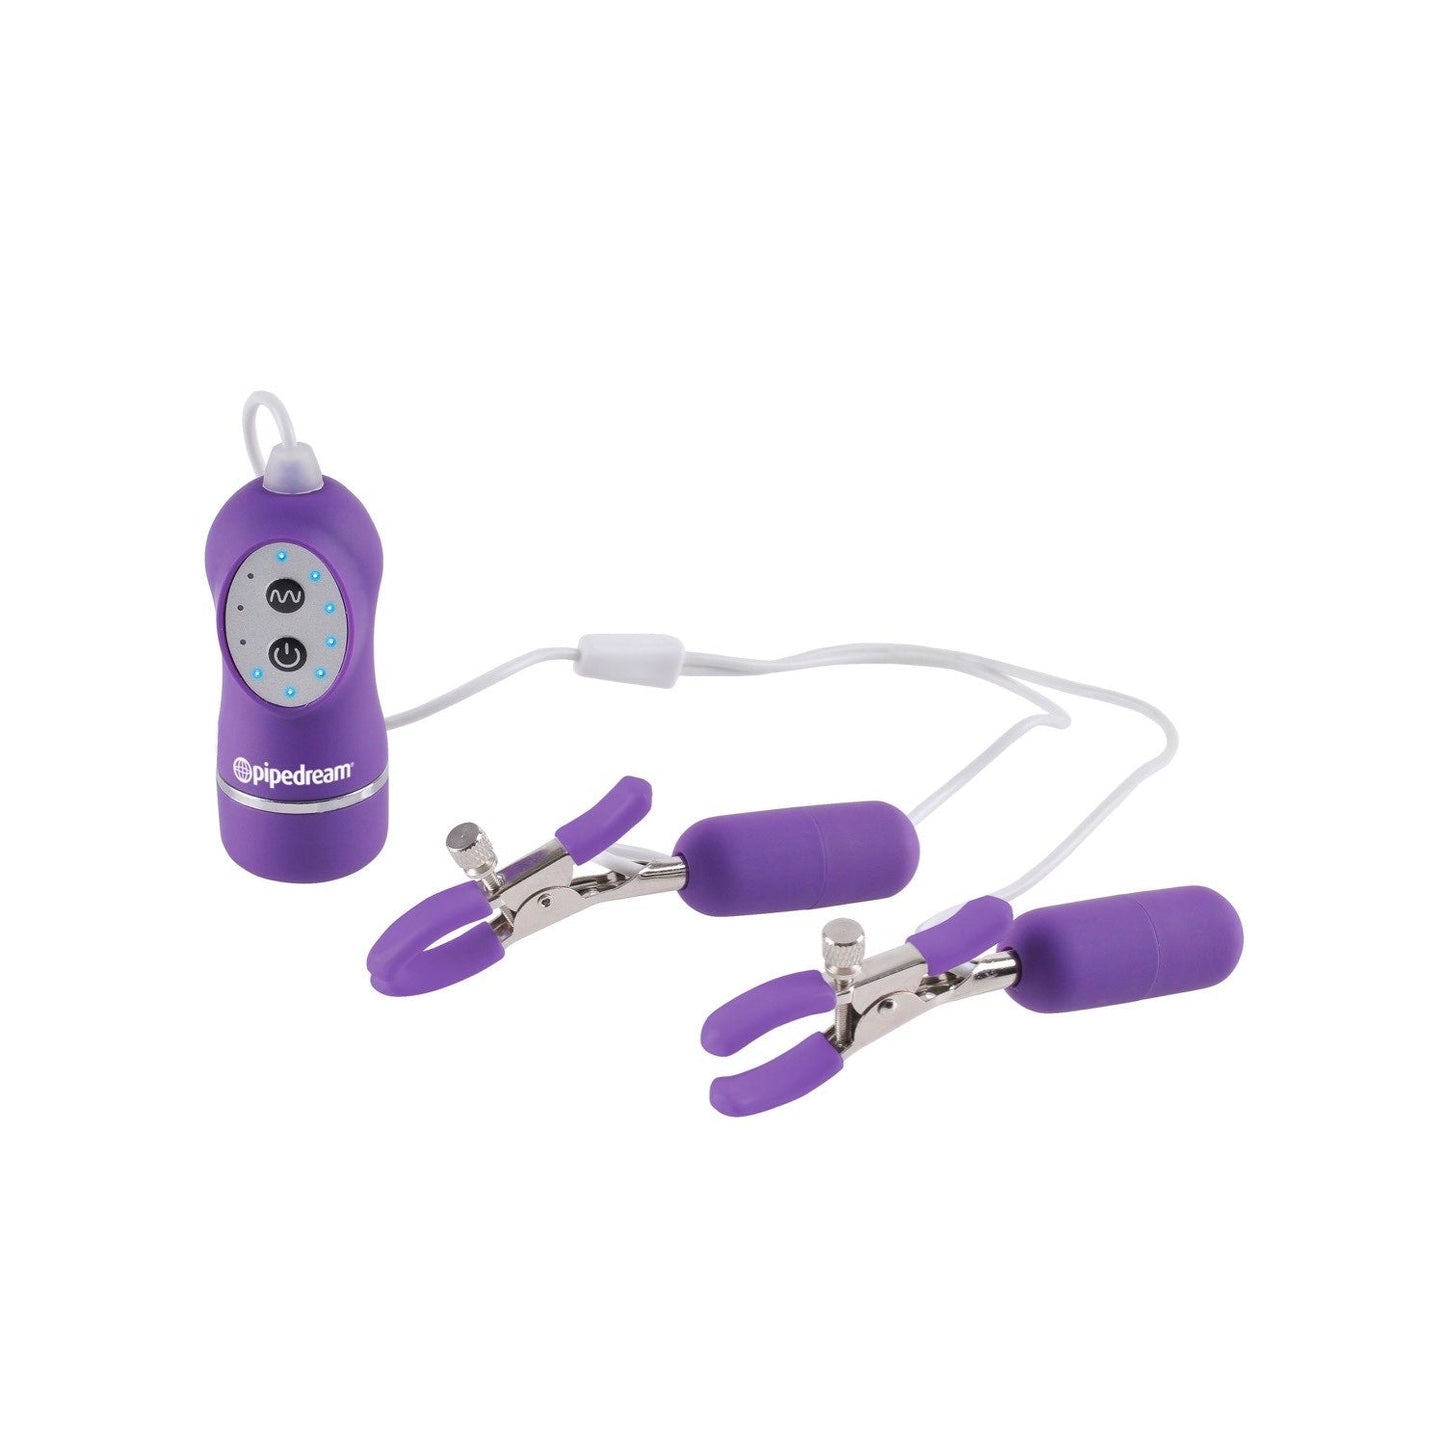 10 功能振动接头夹 - 紫色振动接头夹